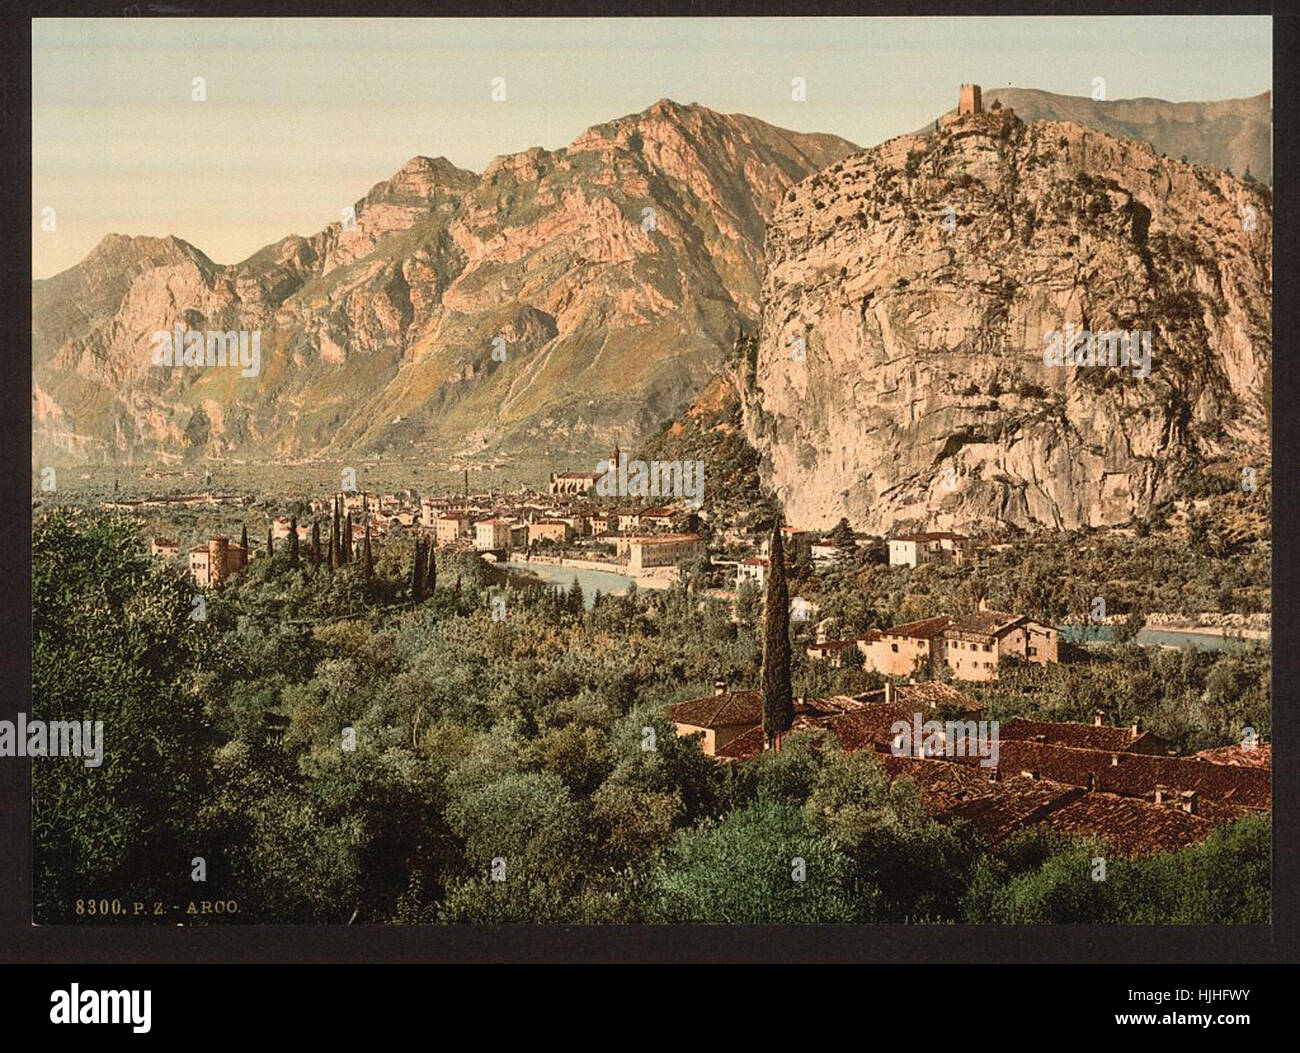 Gesamtansicht, Arco, Gardasee, Italien - Photochrom XIXth Jahrhundert Stockfoto